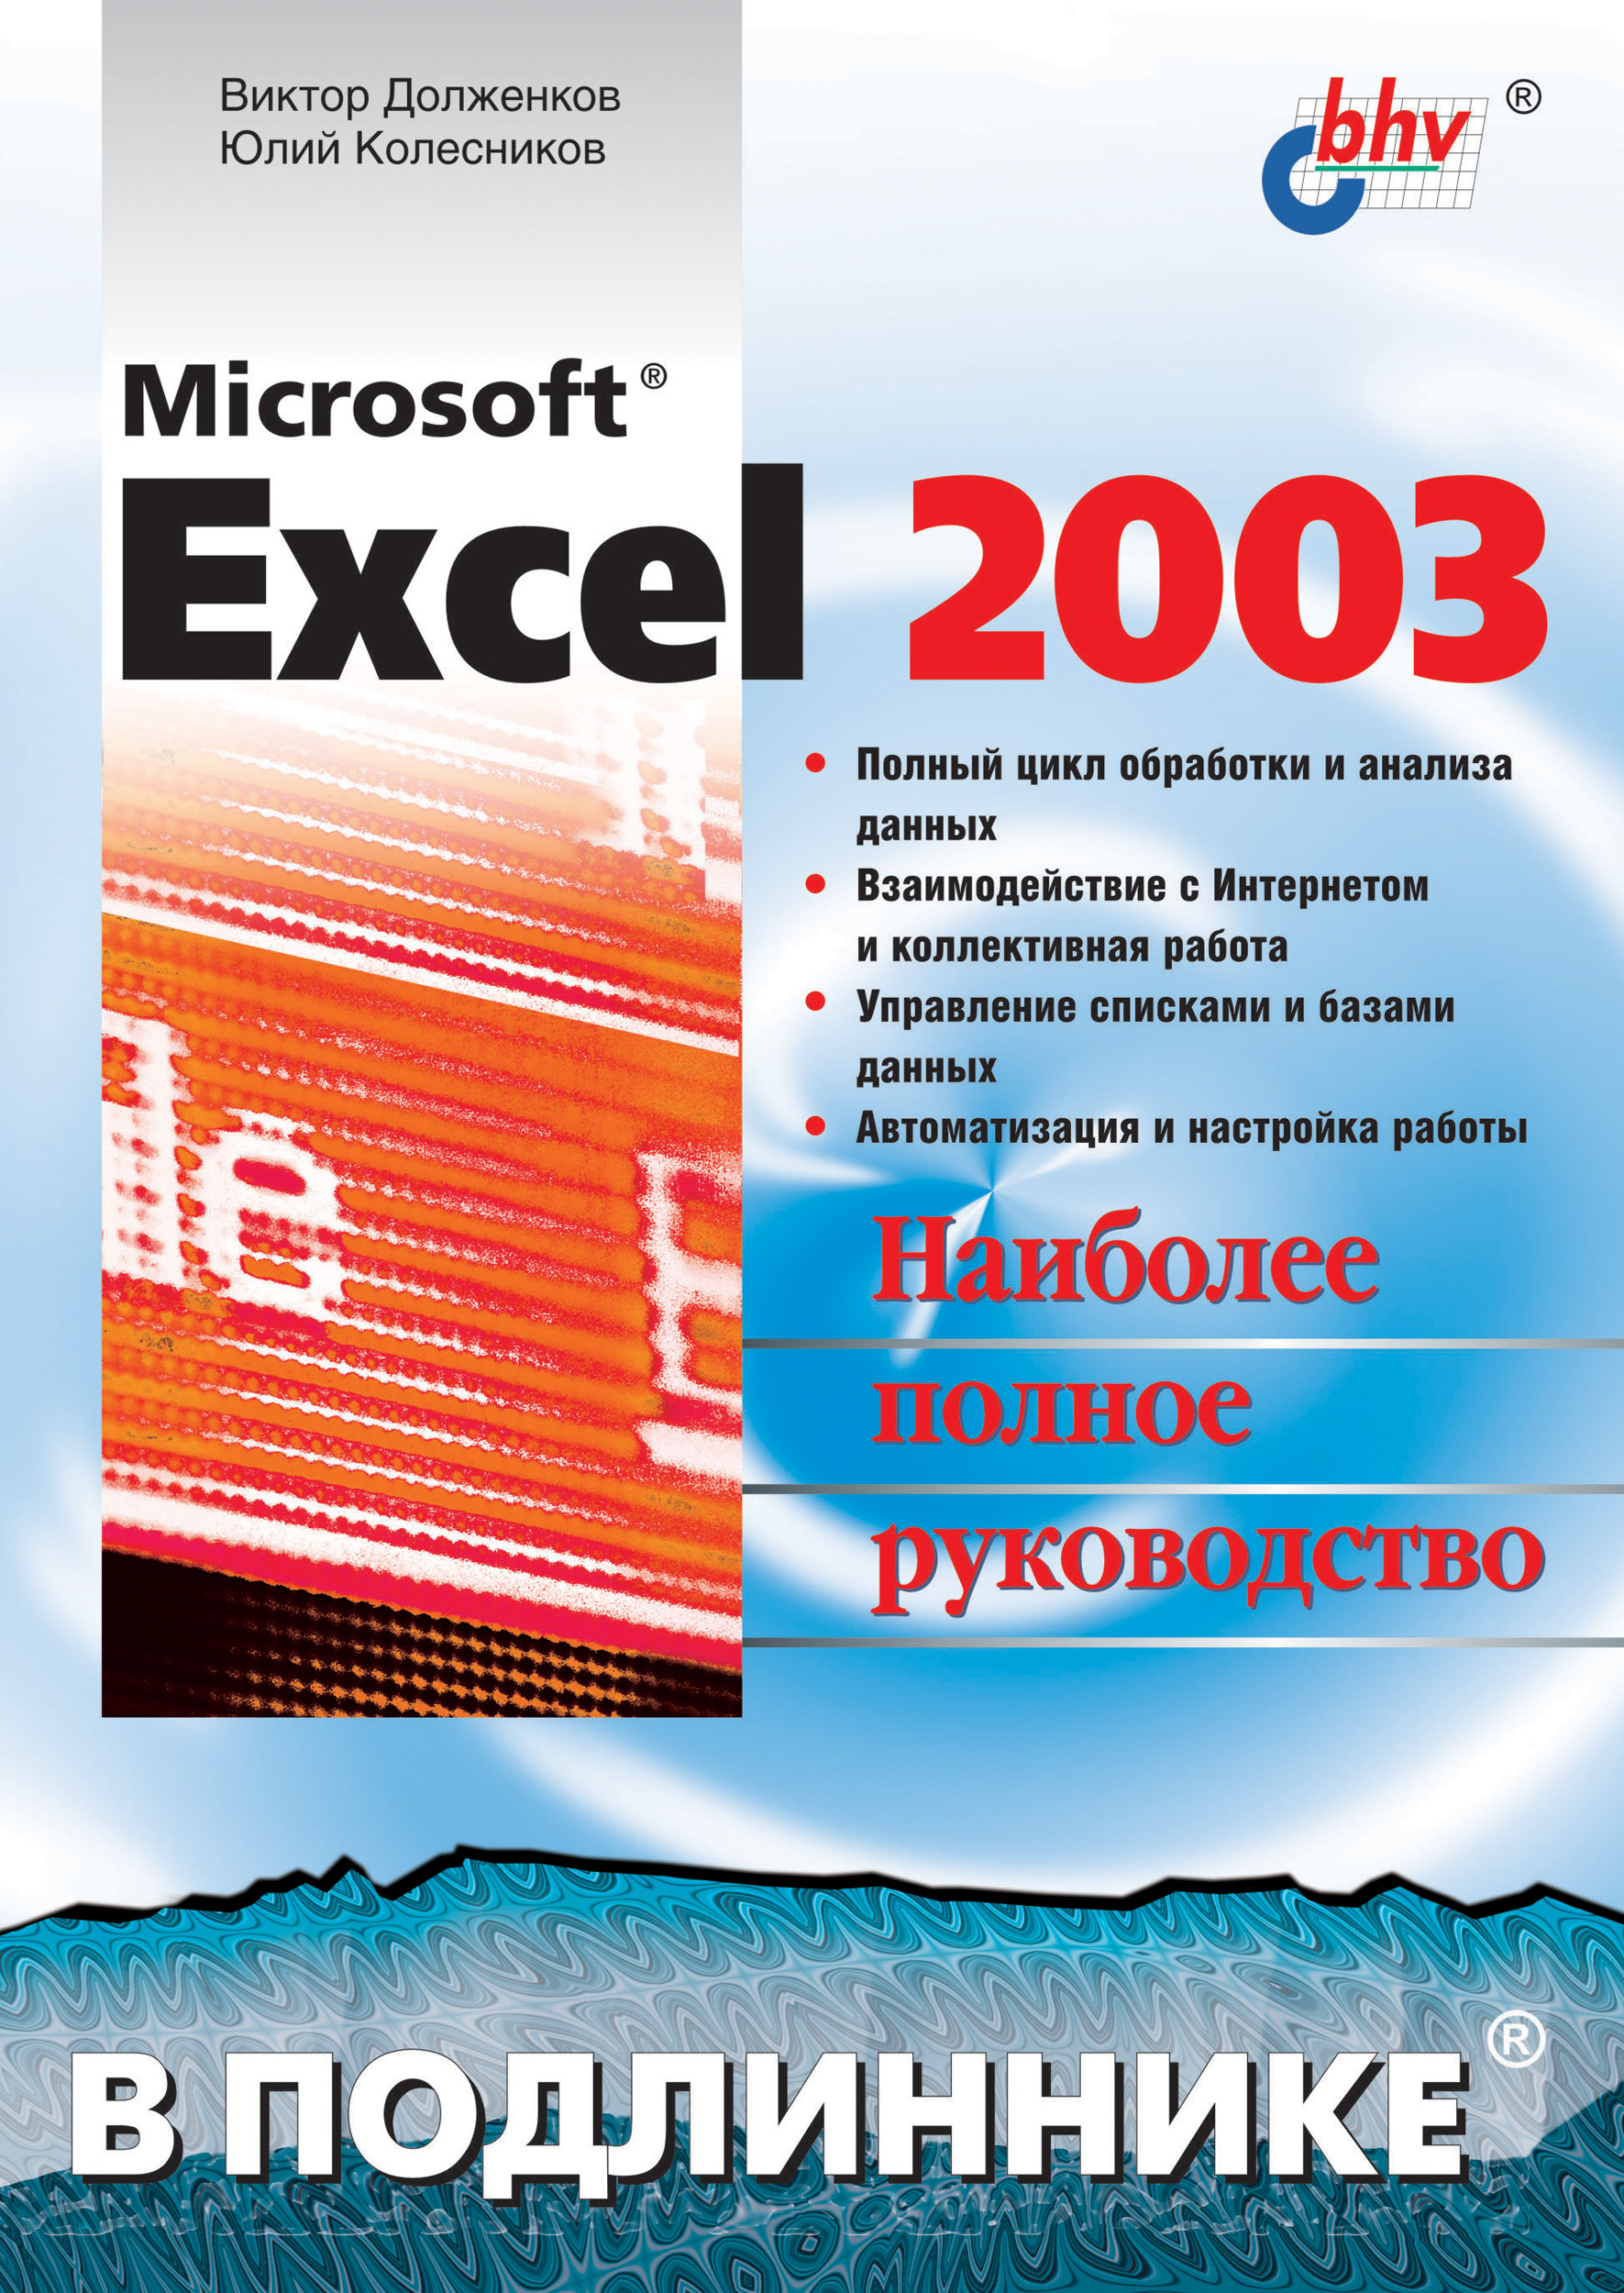 Книга В подлиннике. Наиболее полное руководство Microsoft Excel 2003 созданная Виктор Долженков, Юлий Колесников может относится к жанру программы, руководства. Стоимость электронной книги Microsoft Excel 2003 с идентификатором 6653061 составляет 191.00 руб.